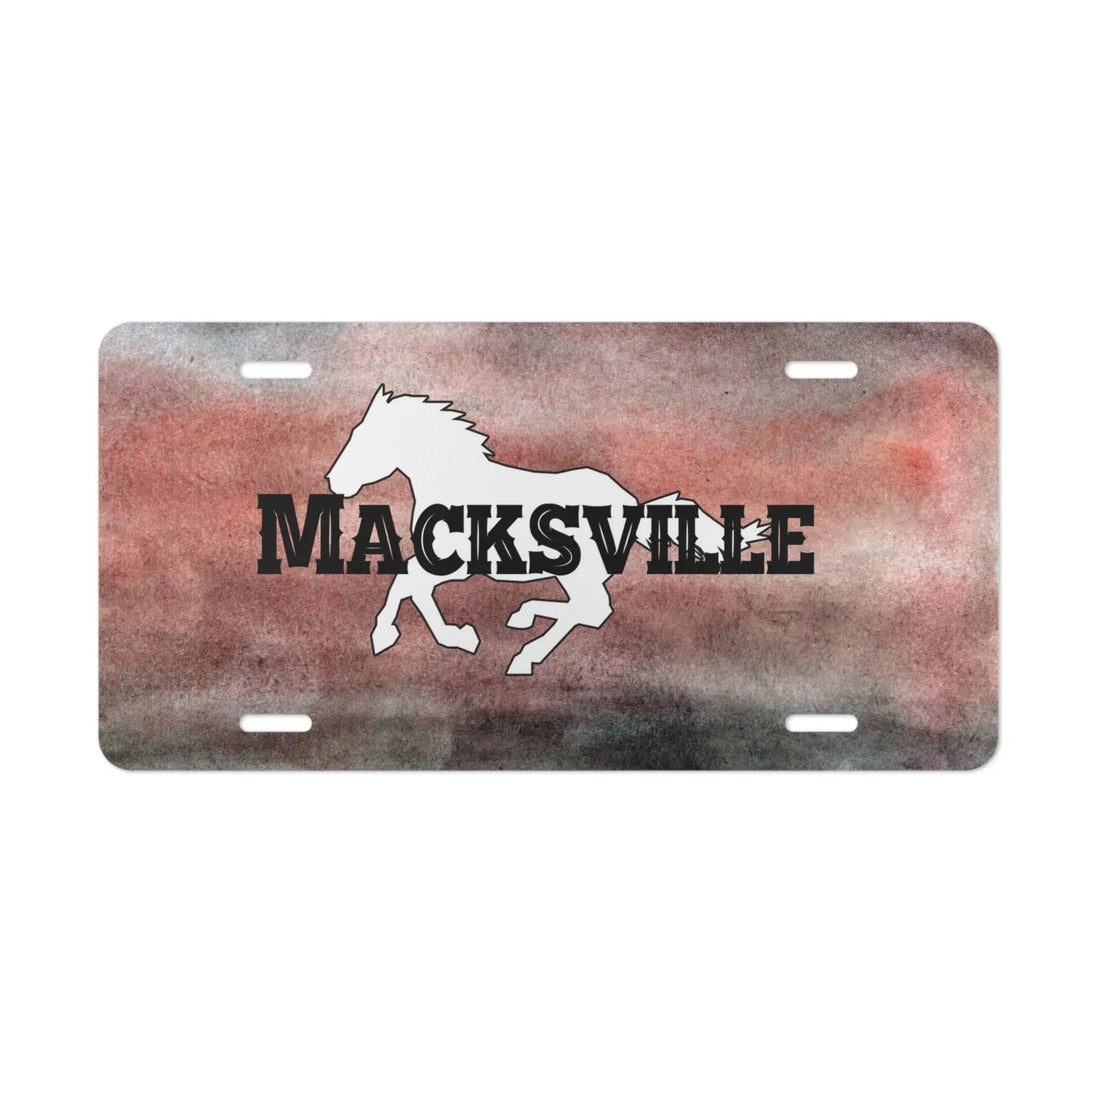 Macksville License Plate - Accessories - Positively Sassy - Macksville License Plate